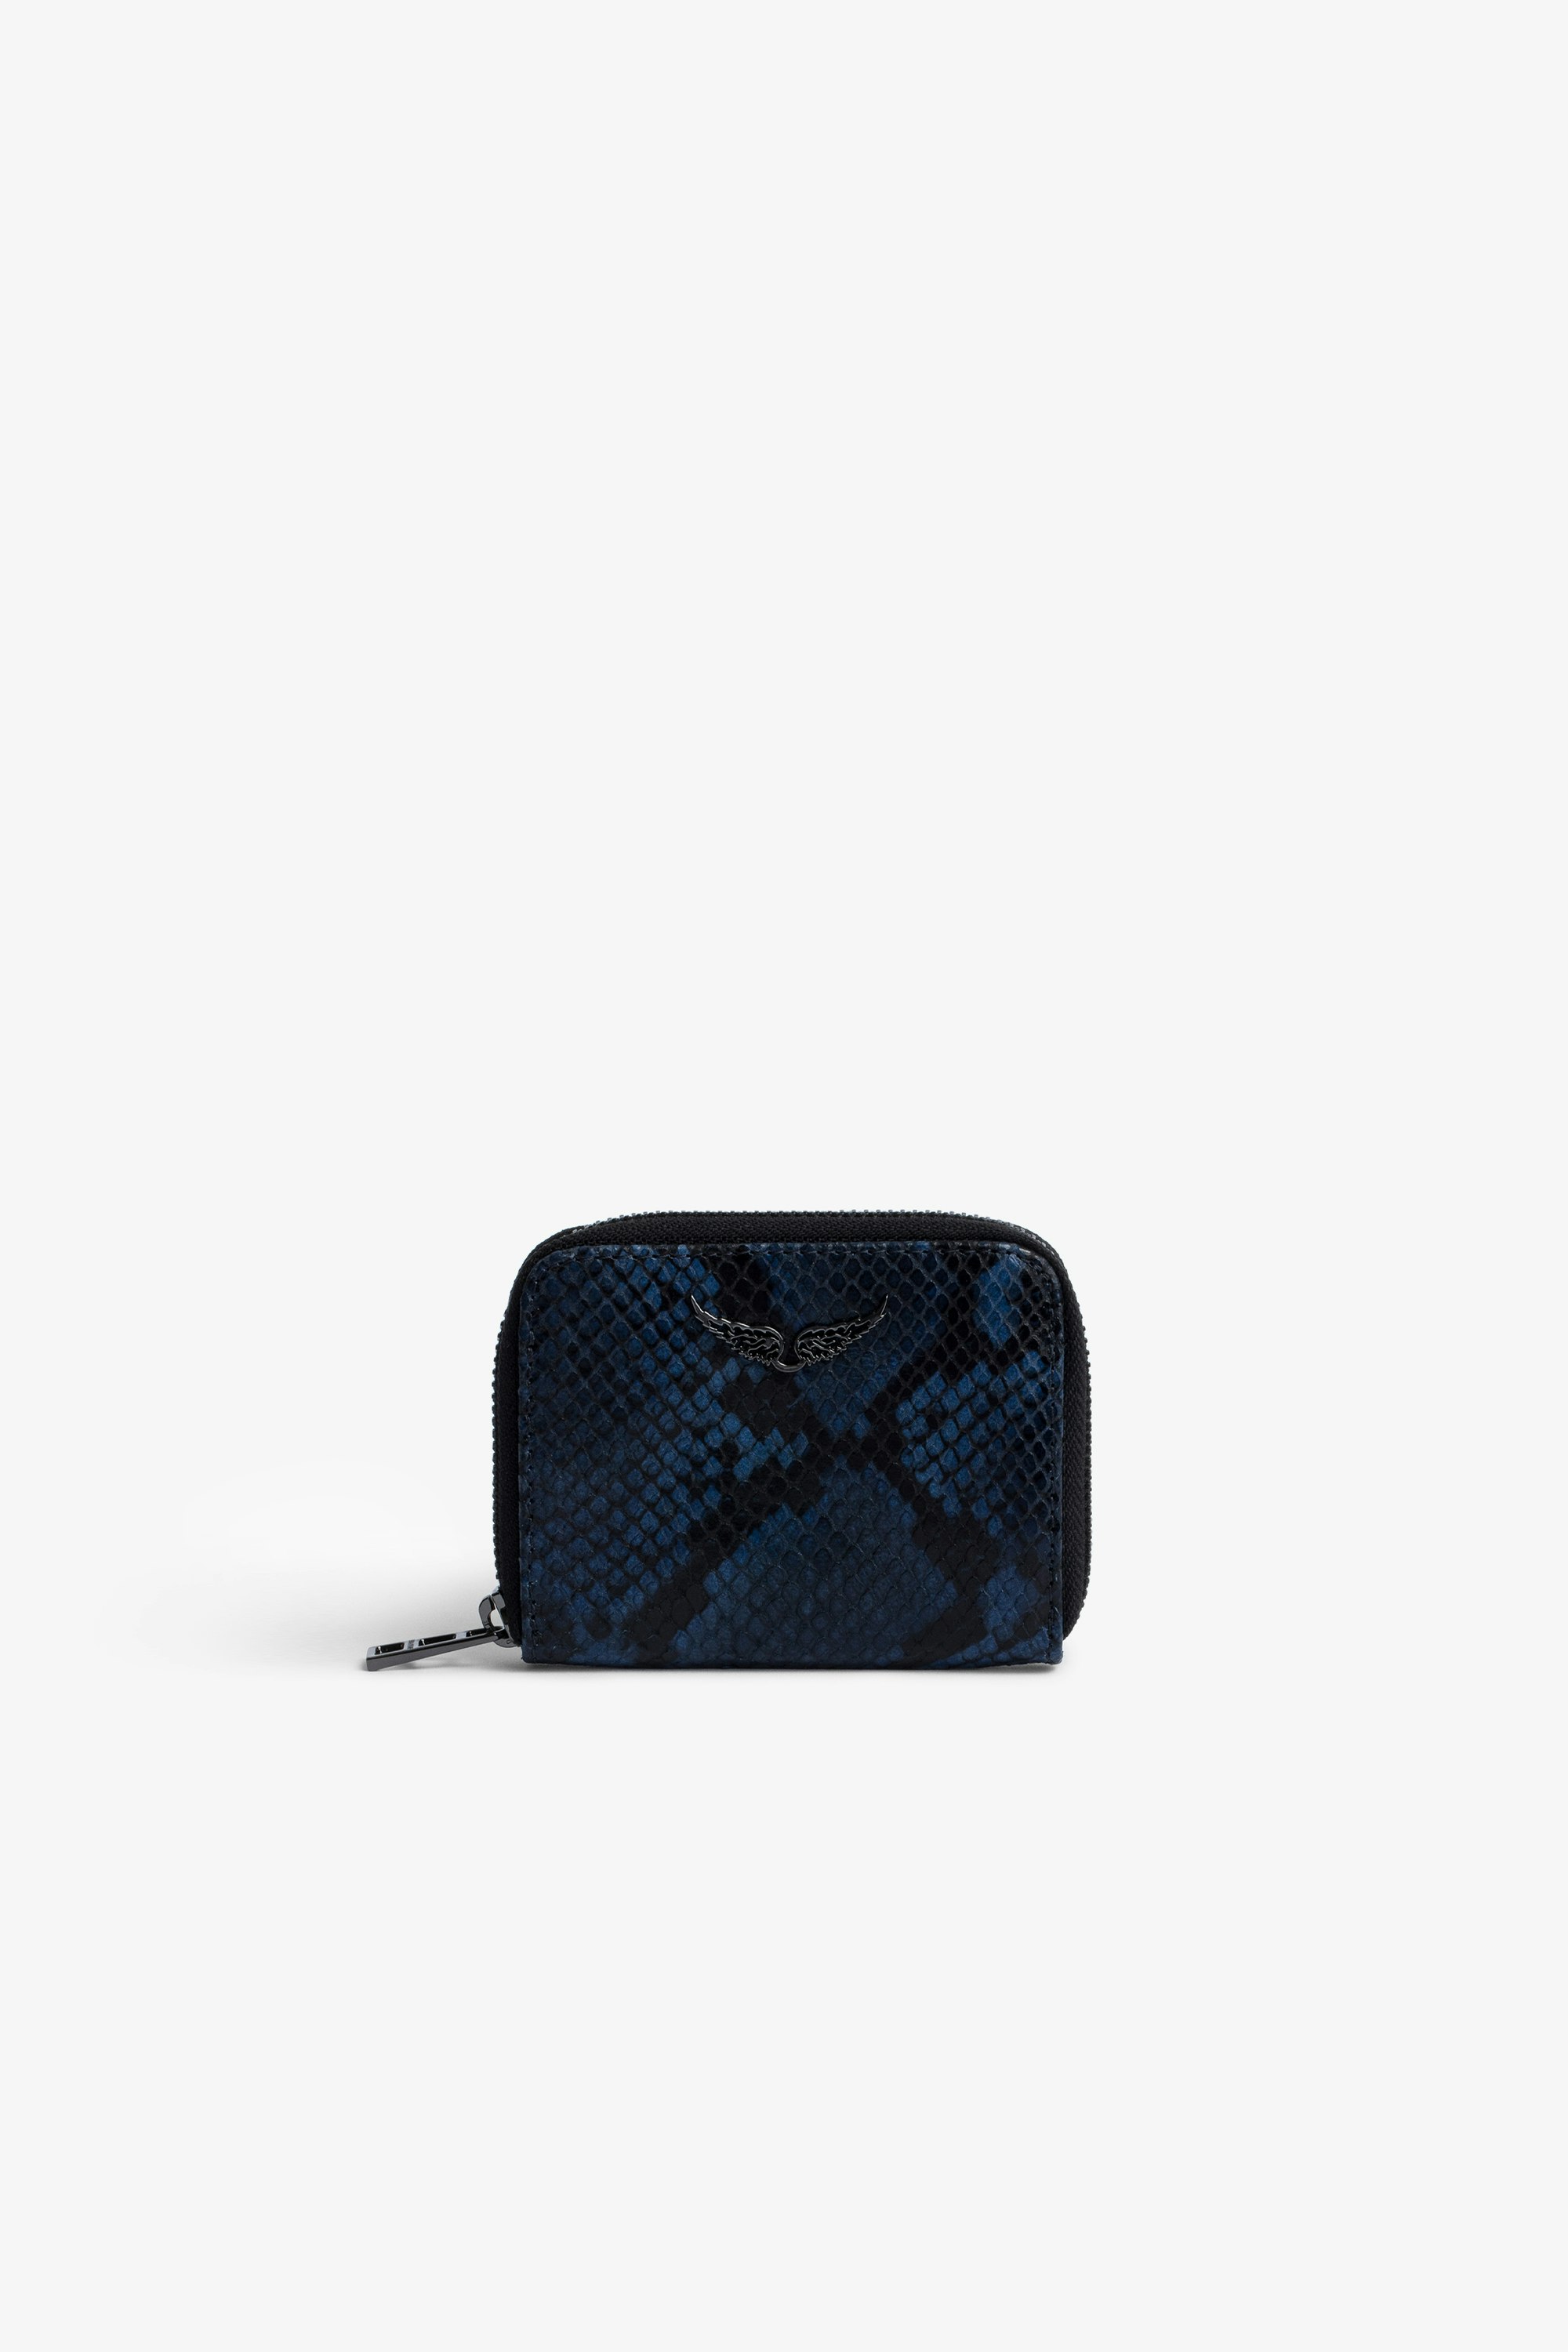 Portemonnaie Mini ZV Damen-Portemonnaie aus blauem und schwarzem Leder in Python-Optik